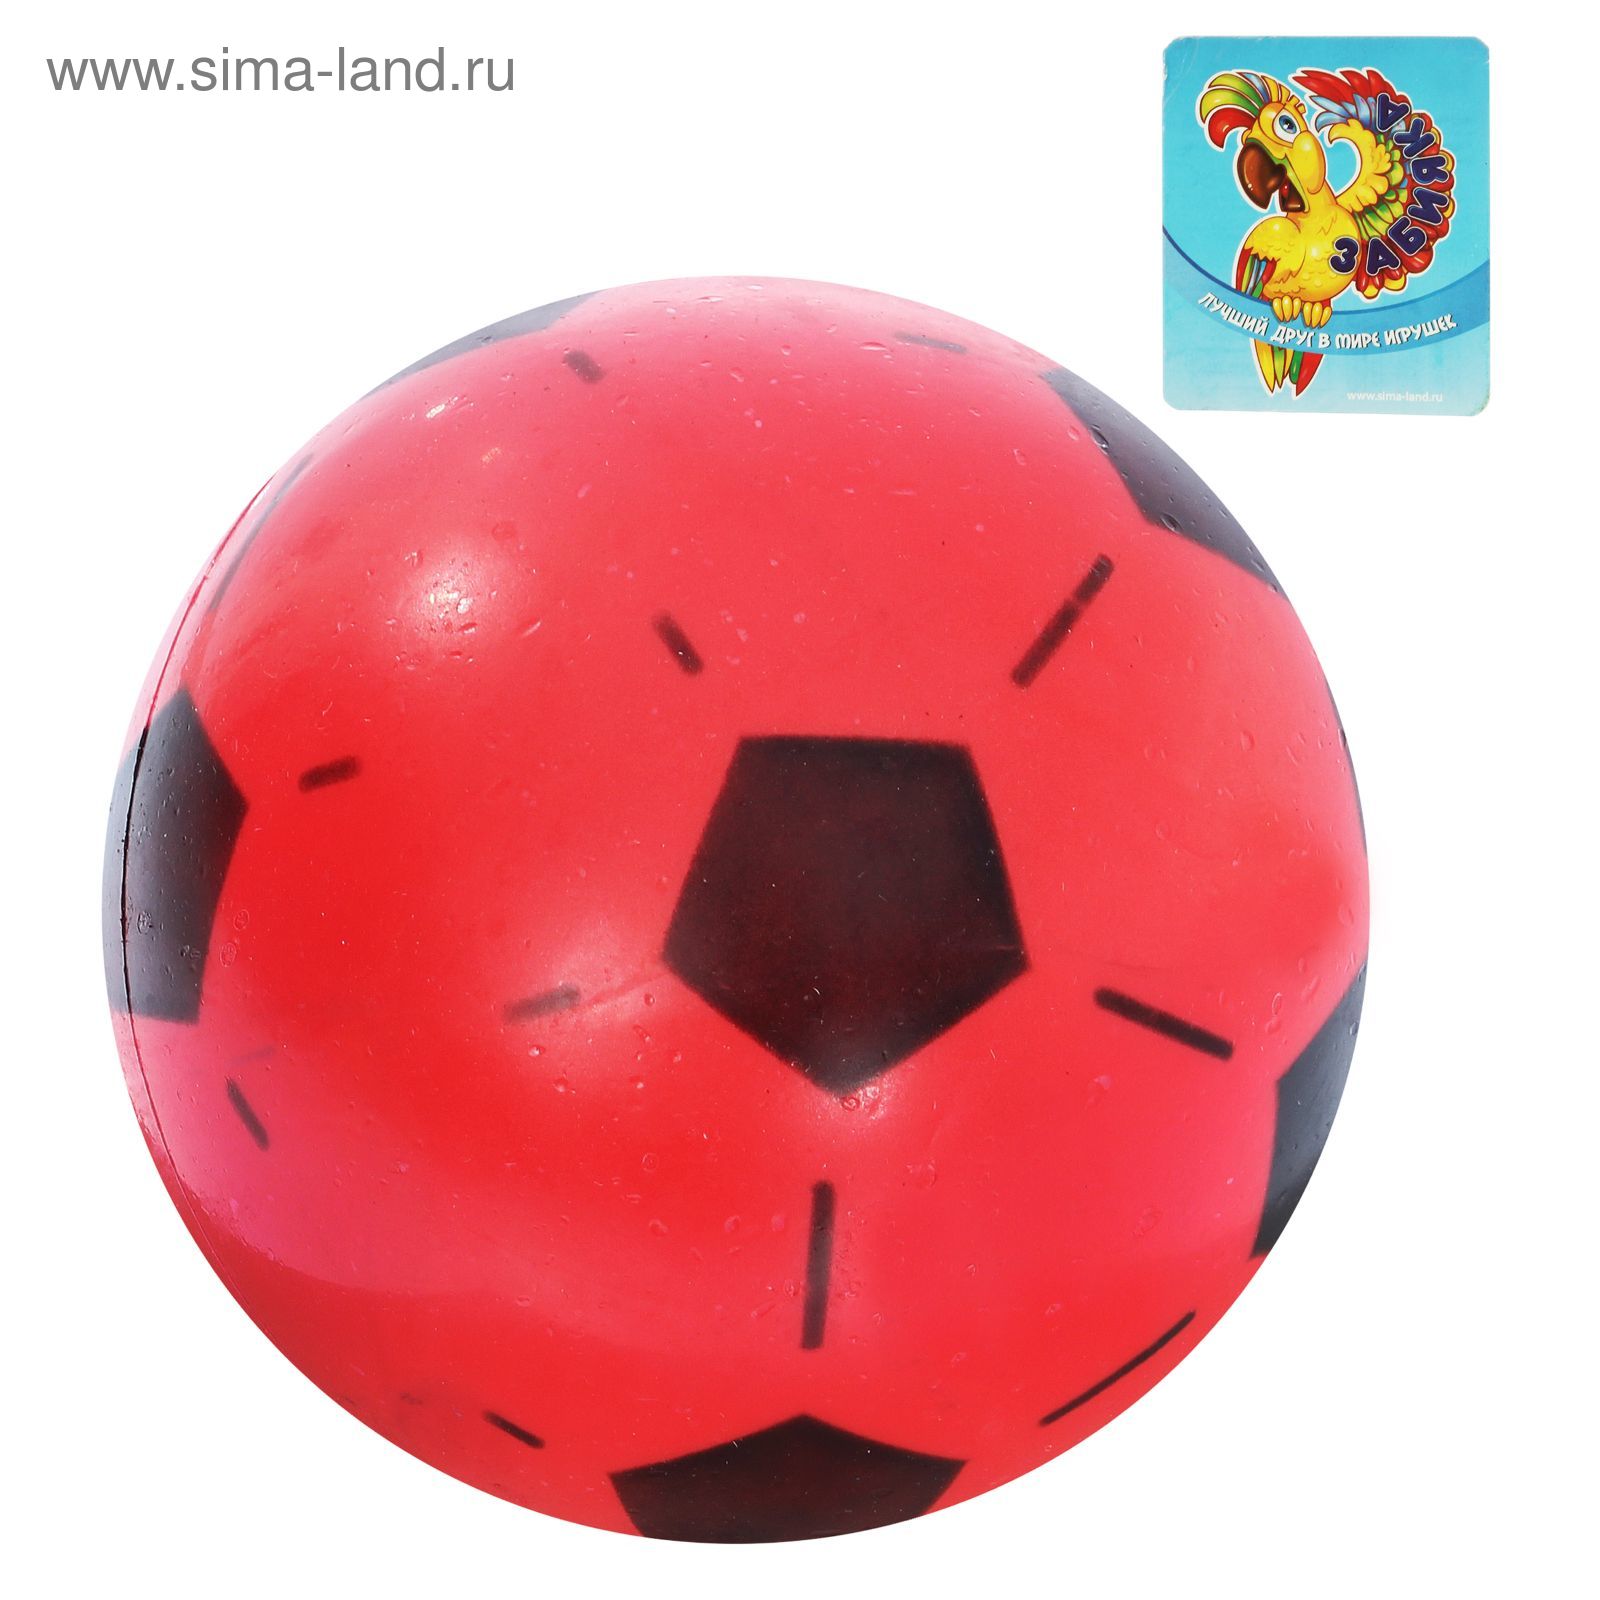 Мяч футбольный "World Cup 2014", d=16 см, 45 гр, МИКС